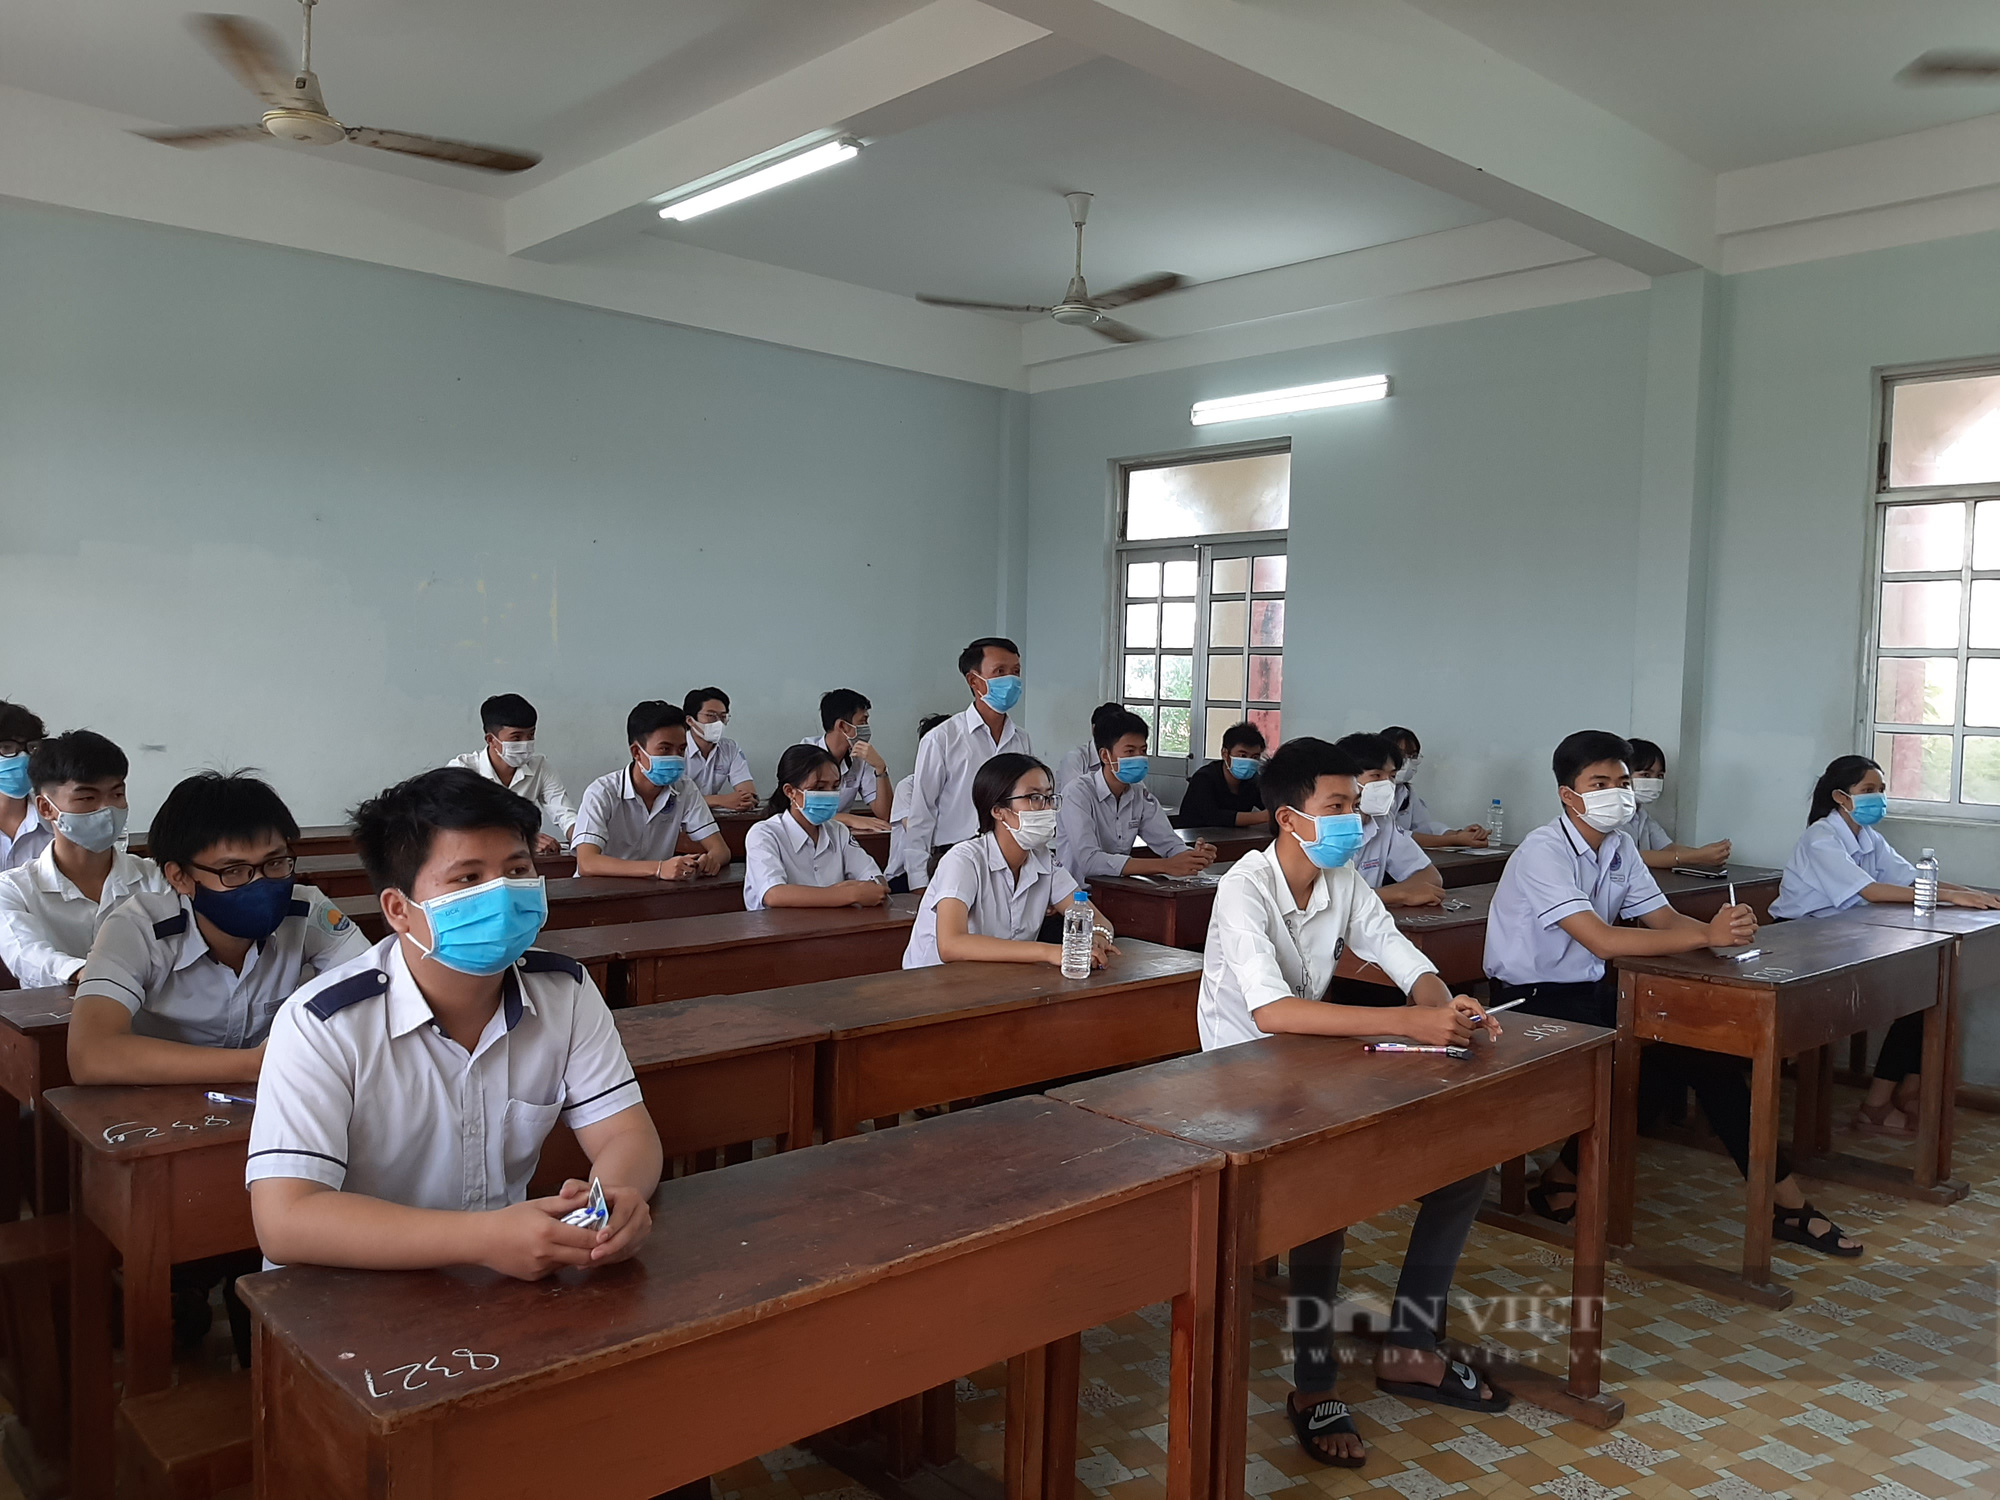 Phú Yên: 151 thí sinh thi tốt nghiệp THPT nghi ngờ nhiễm Covid-19, chỉ có 1 ca dương tính - Ảnh 1.